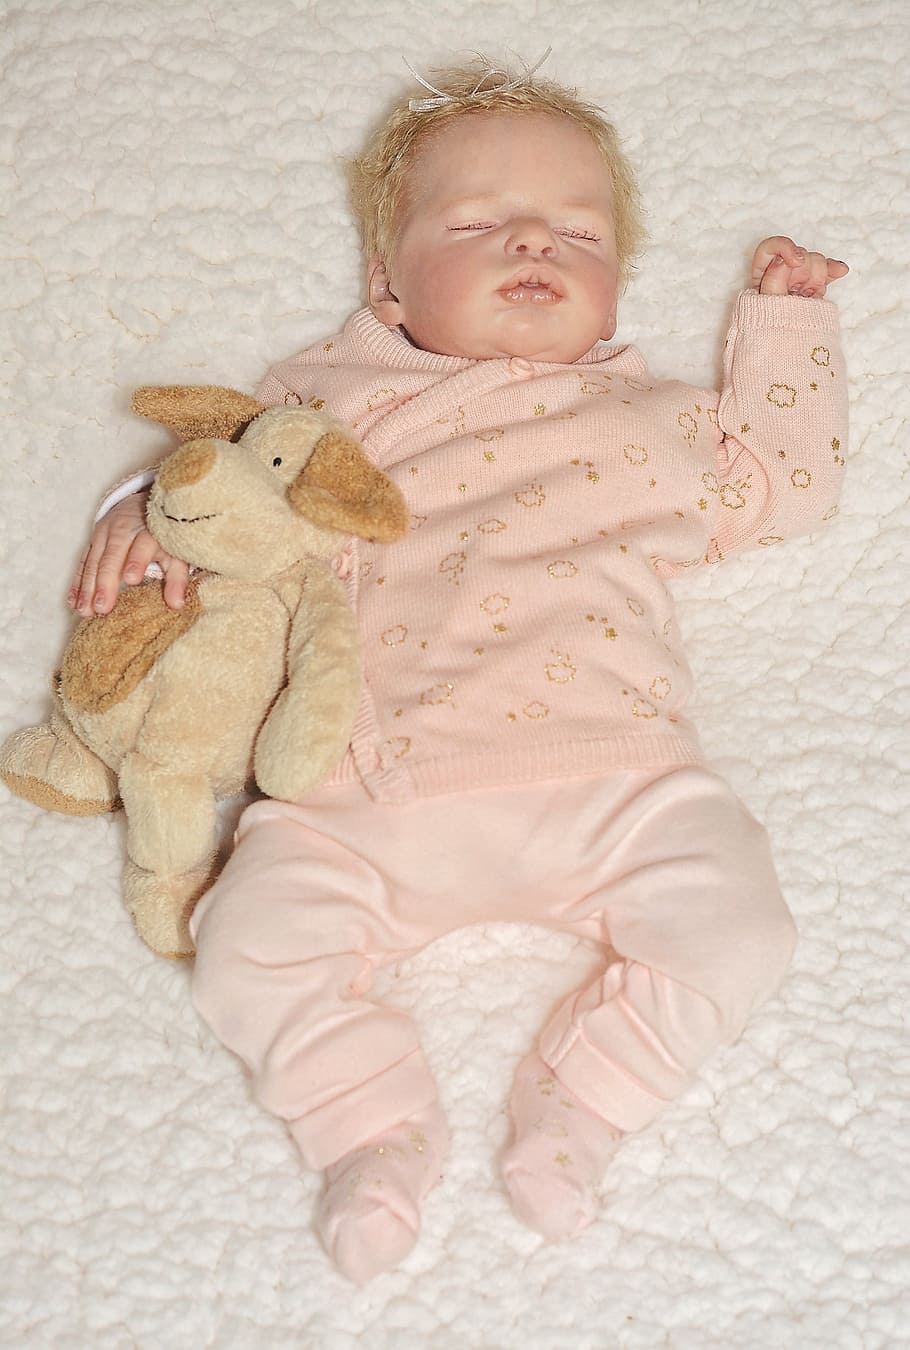 muñeca, artista artista, bebé, niña, mujer, pequeña, dulce, dormida, pacífica, oso de peluche